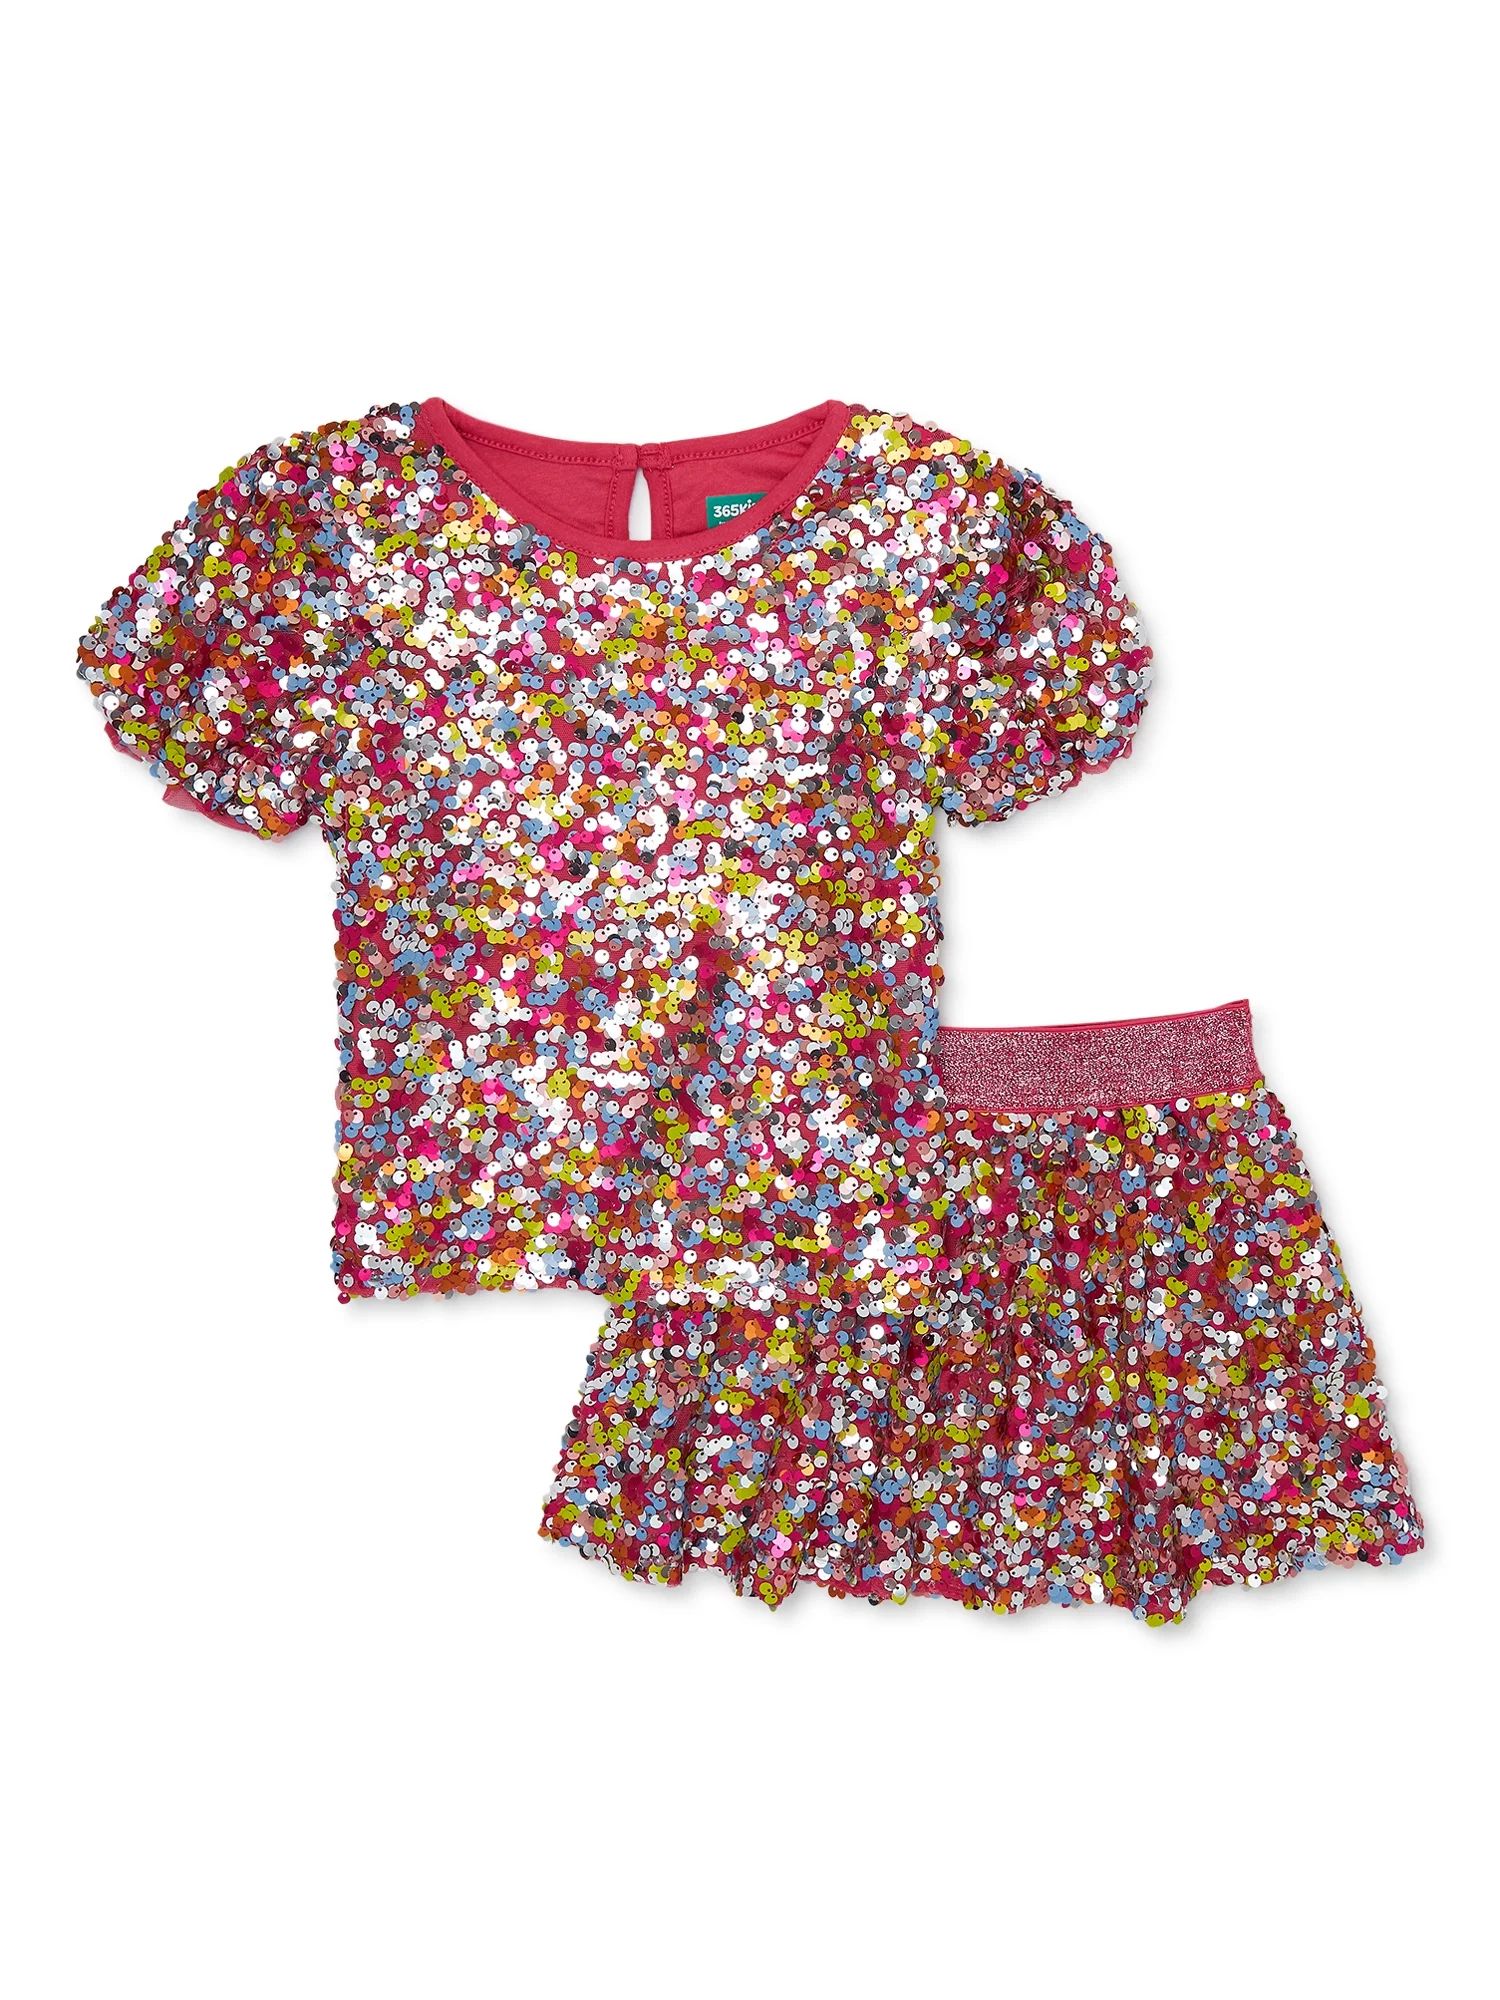 365 Kids from Garanimals Girls Sequin Top and Skirt Outfit Set, 2-piece, Sizes 4-10 - Walmart.com | Walmart (US)